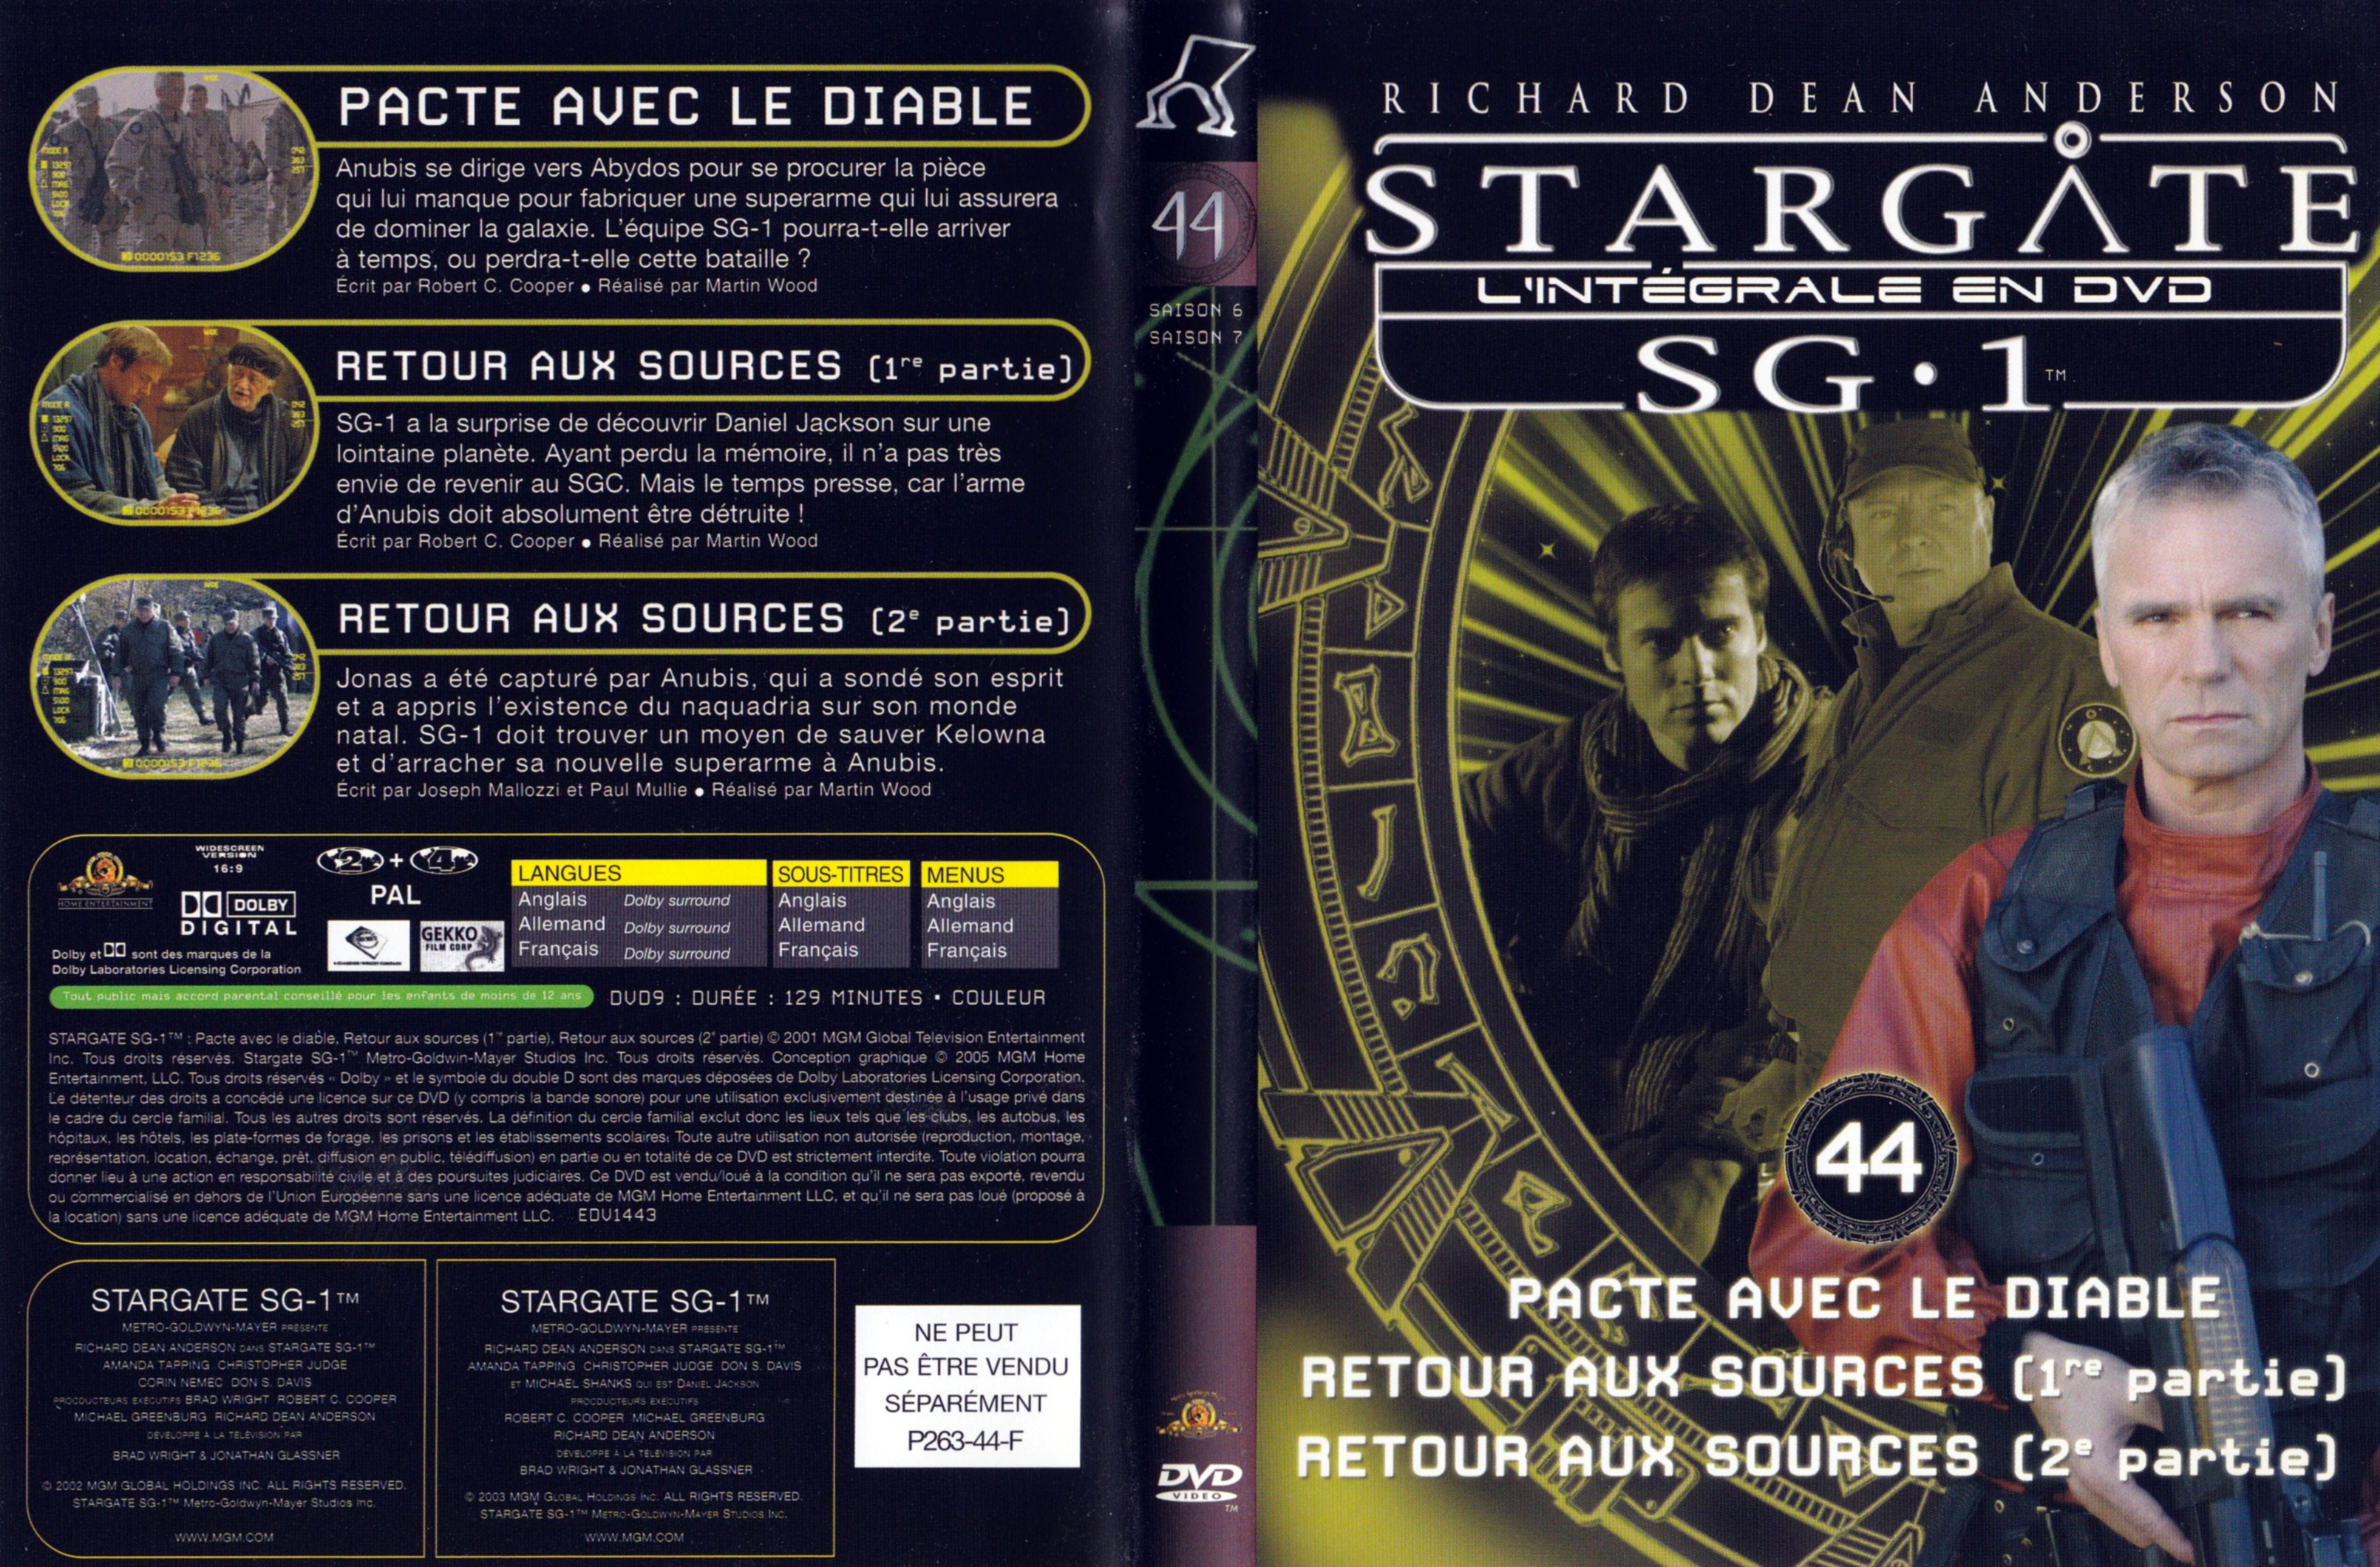 Jaquette DVD Stargate SG1 Intgrale Saison 6-7 vol 44